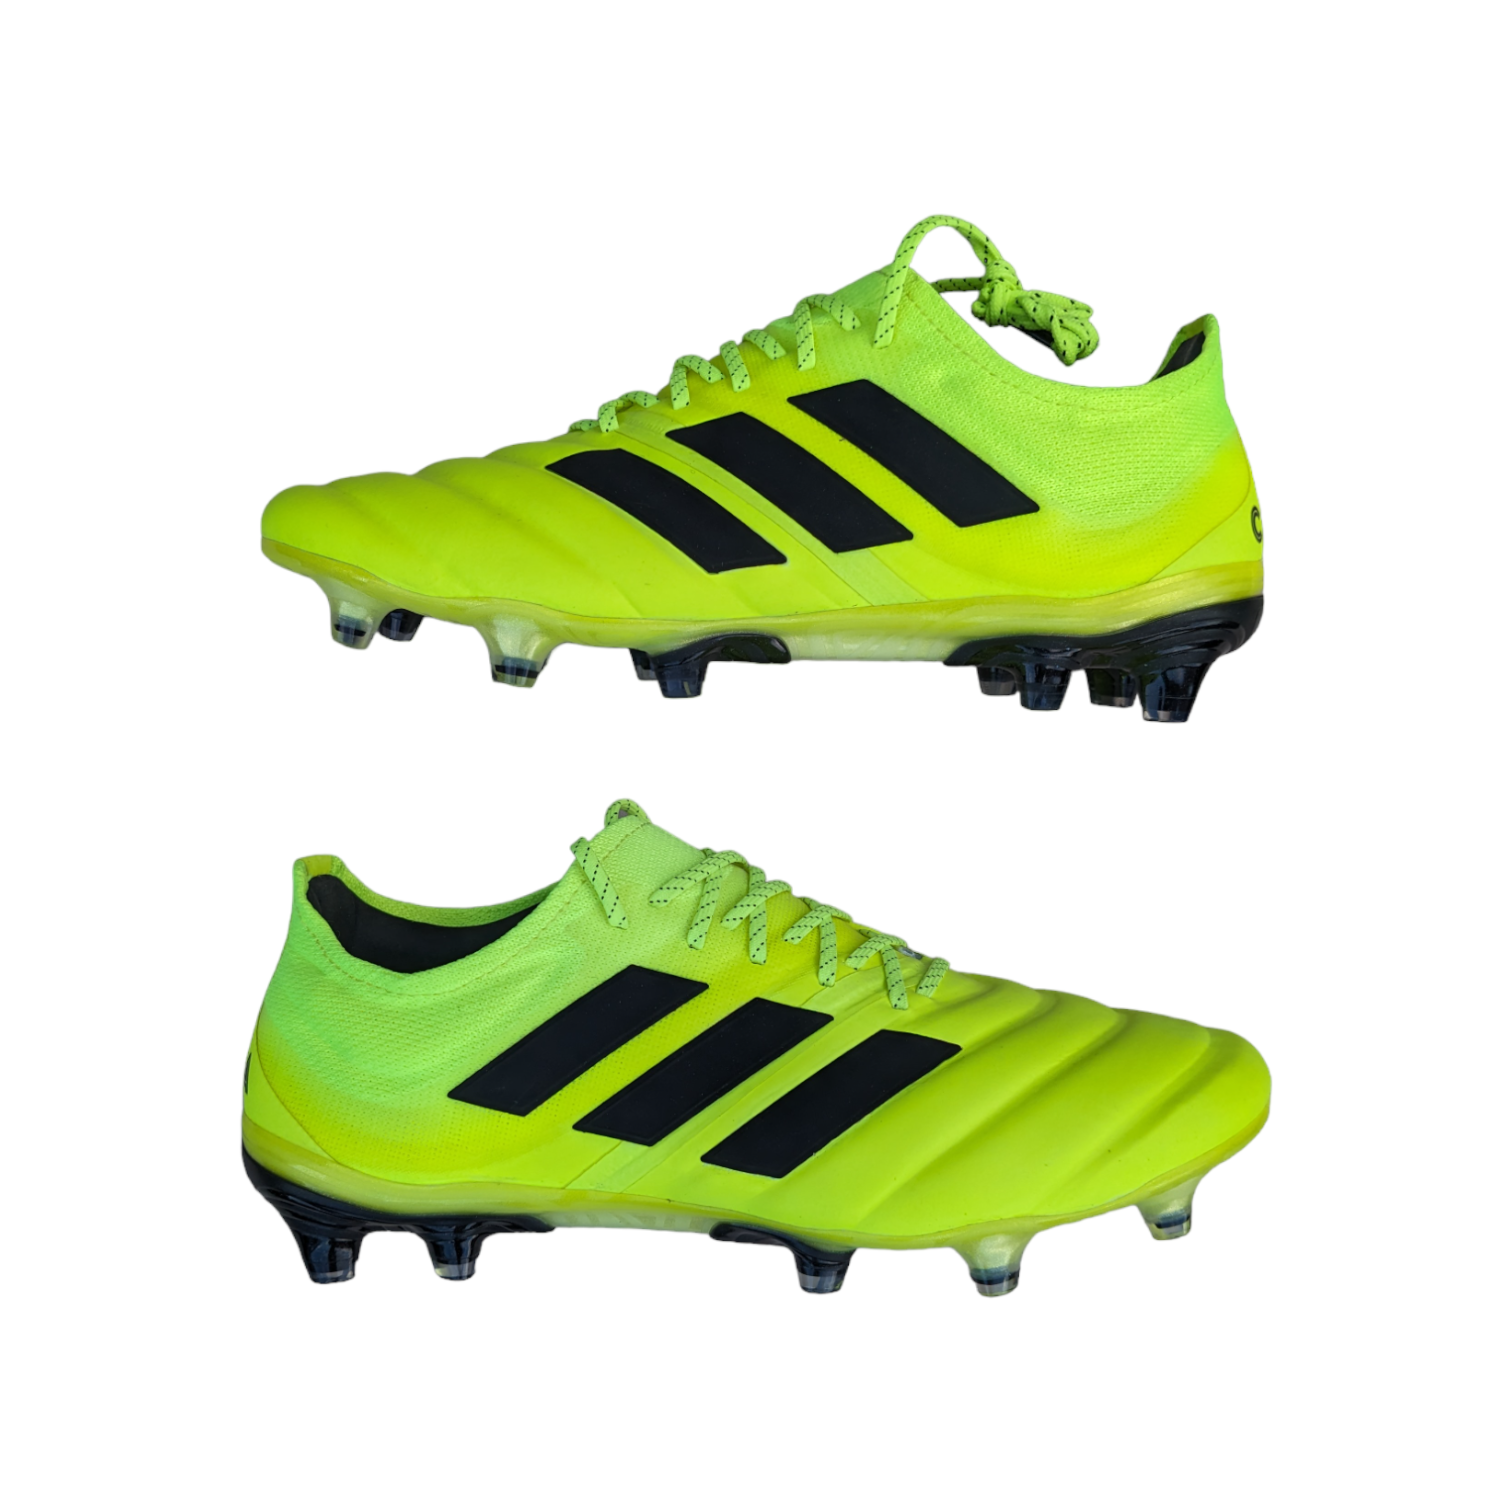 Adidas Copa Platinum Boots